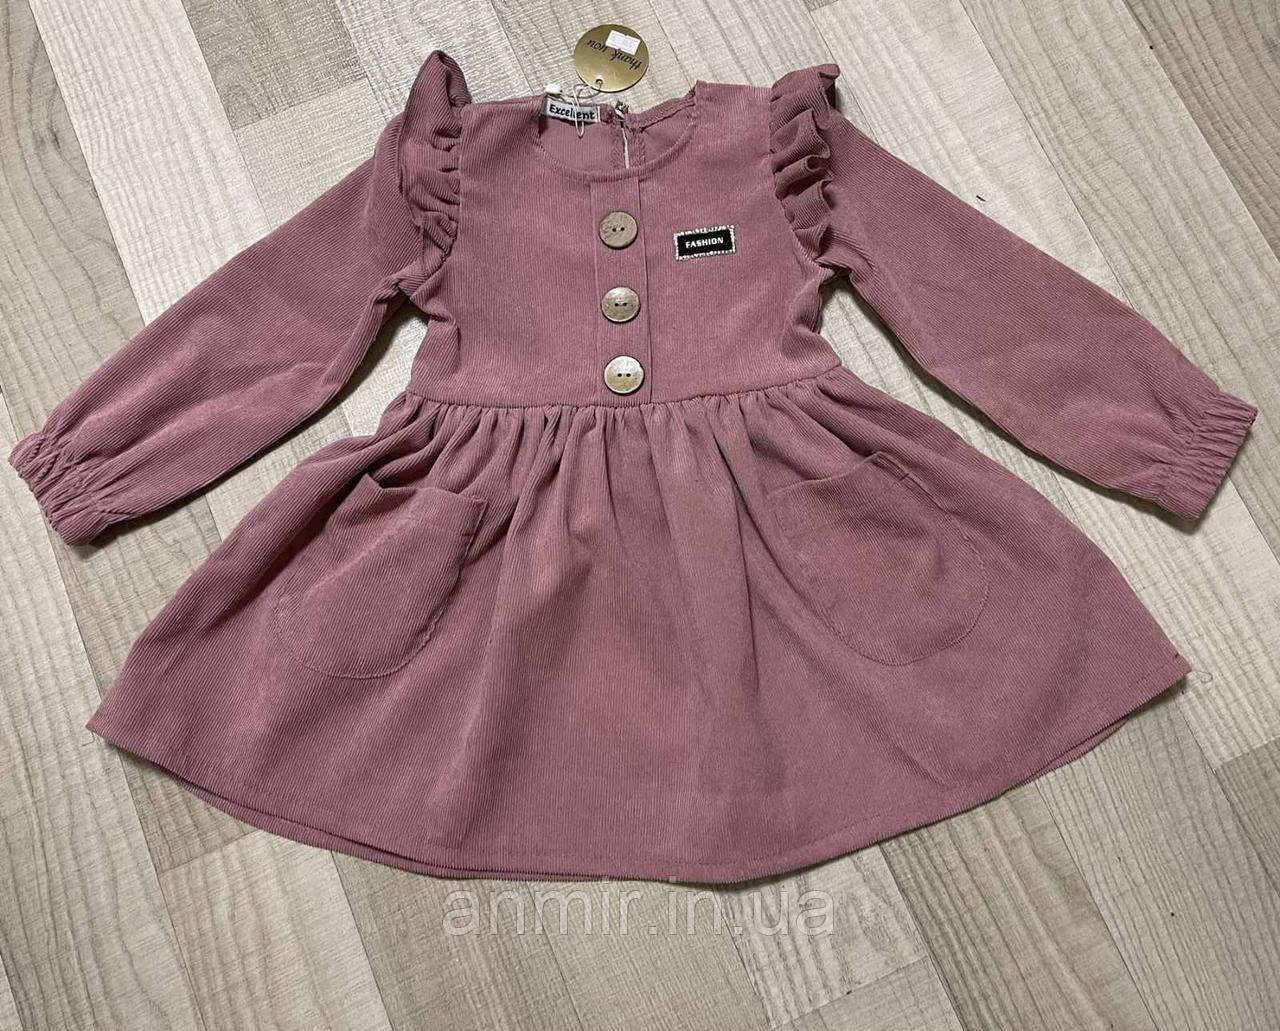 Плаття вельвет КРИЛкі дитяче для дівчинки 3-6 років, колір уточнюйте під час замовлення, фото 1